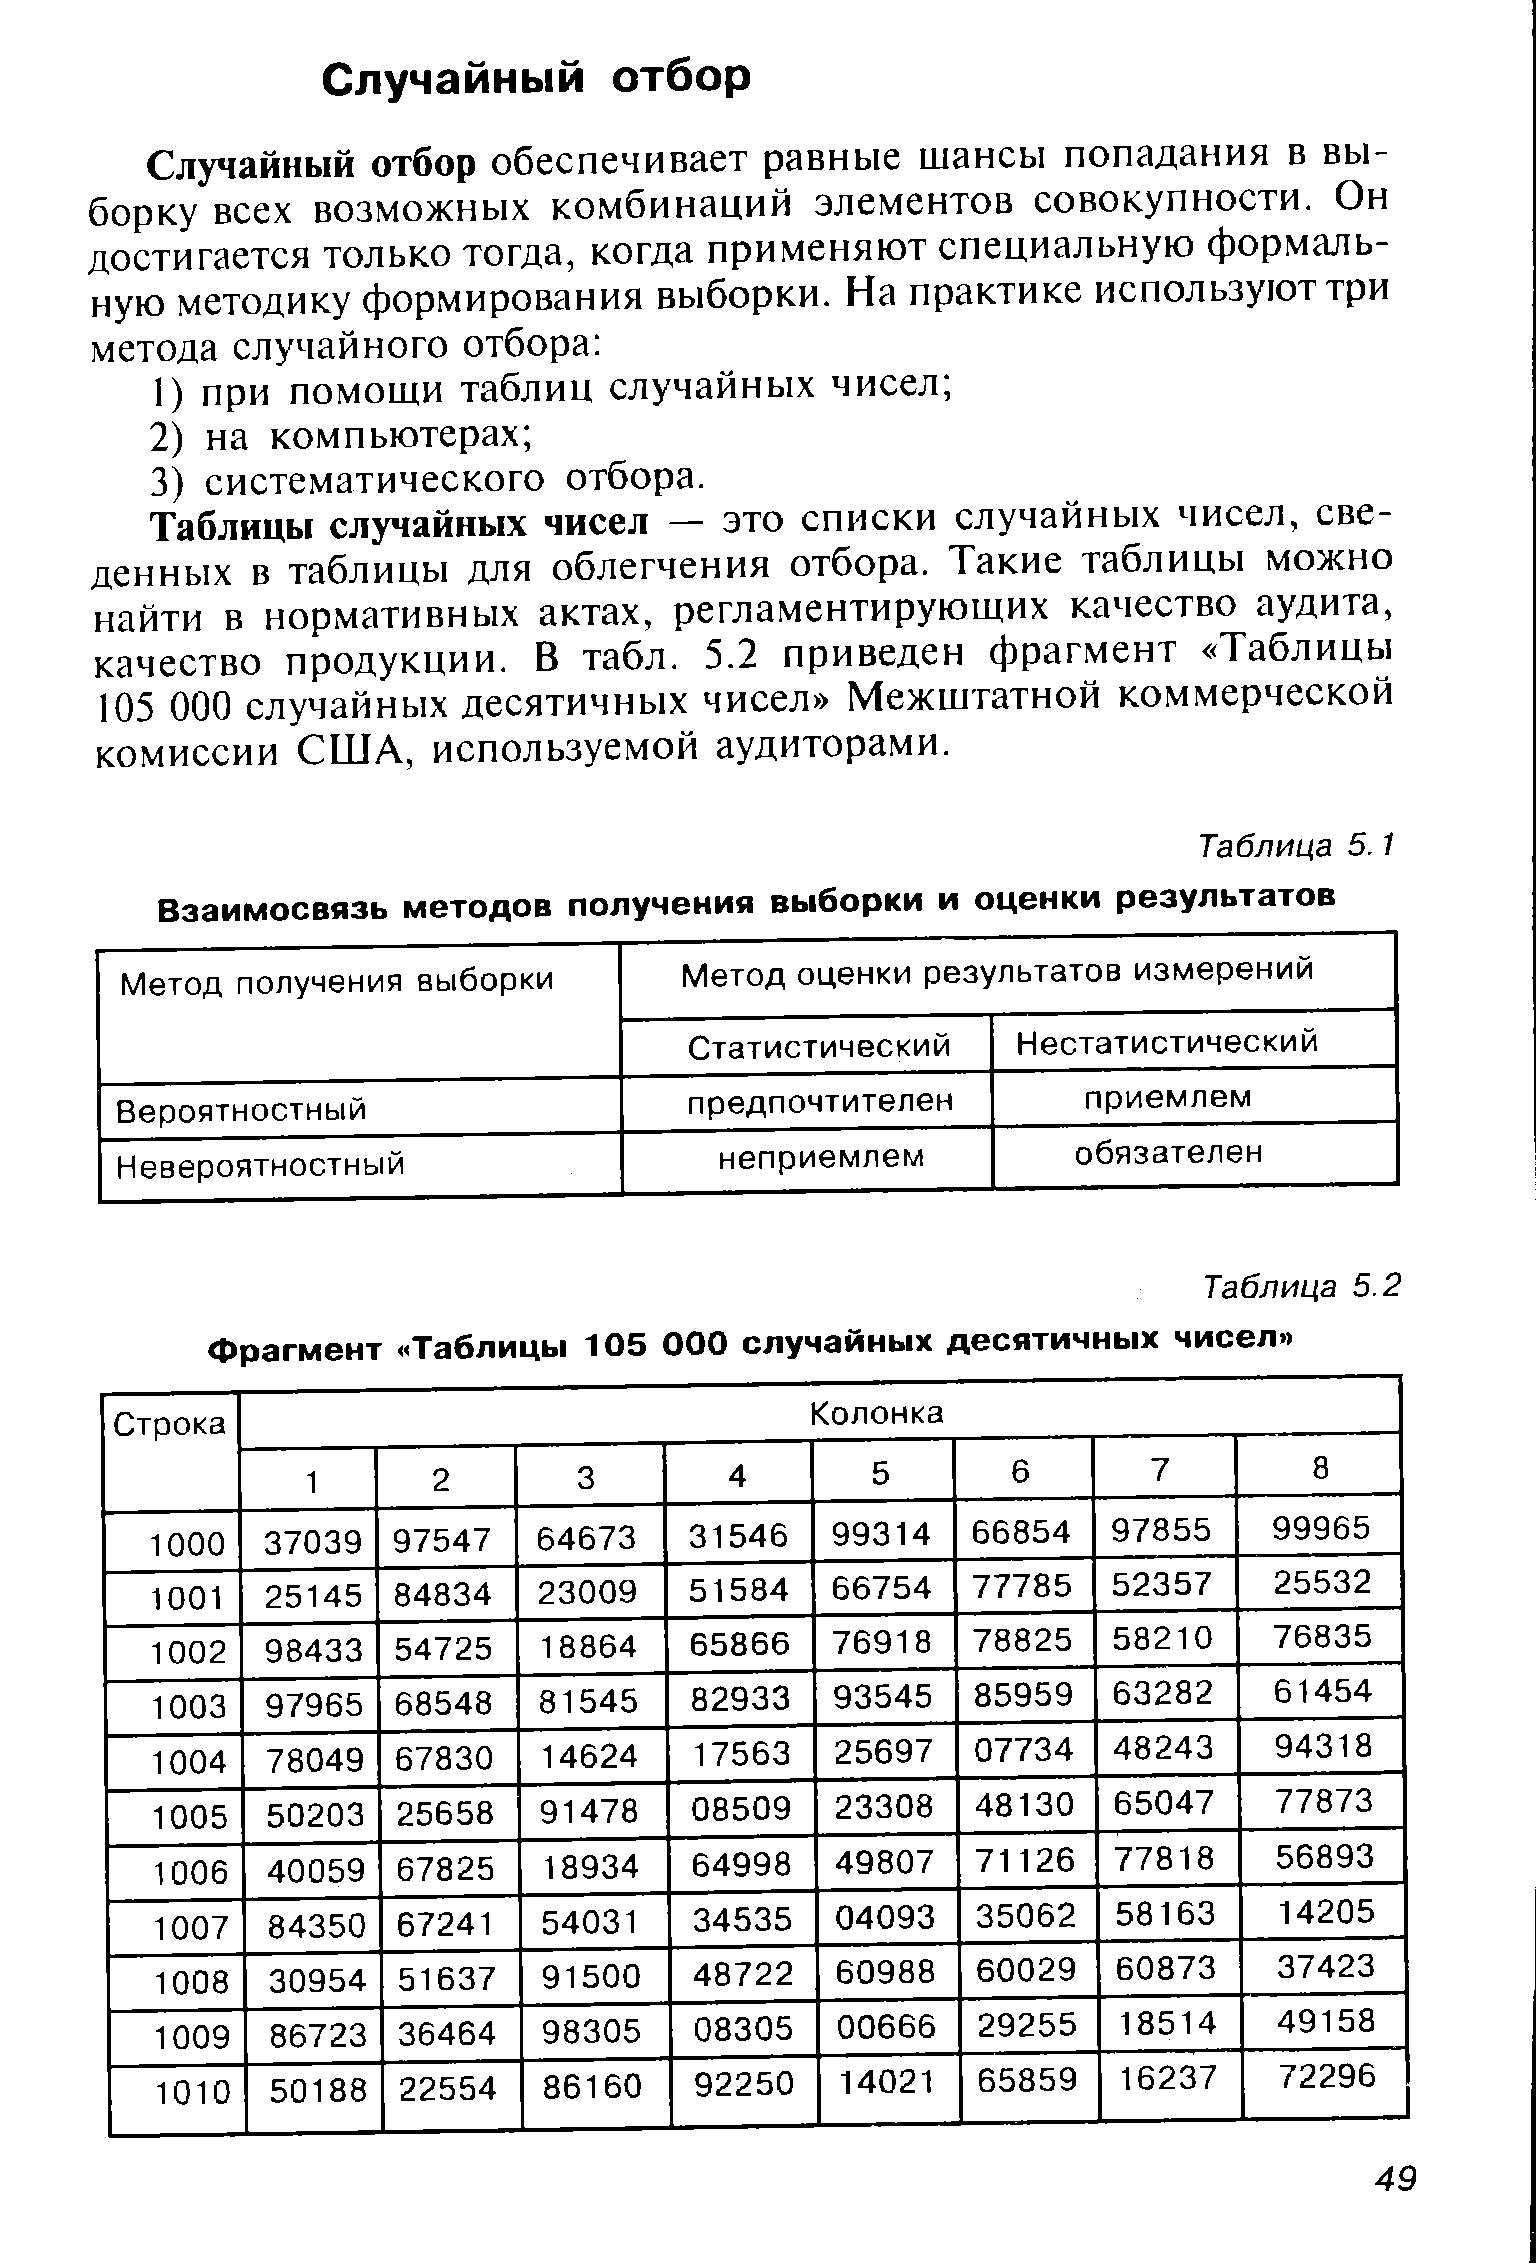 Таблица 5.1 Взаимосвязь методов получения выборки и оценки результатов
